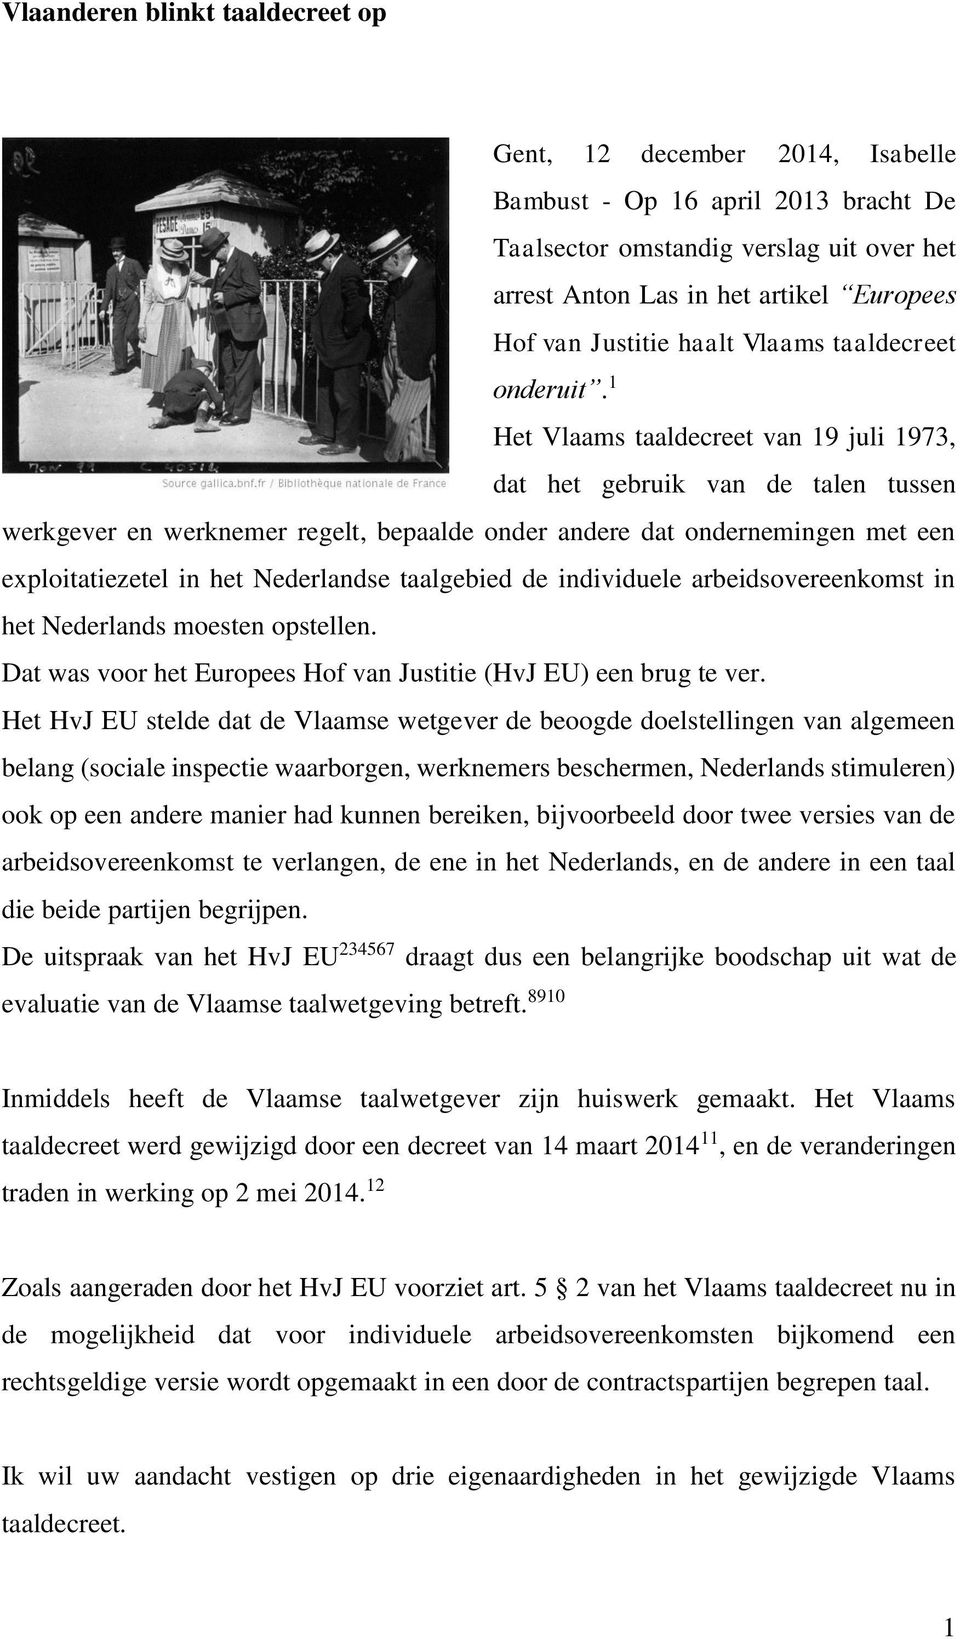 1 Het Vlaams taaldecreet van 19 juli 1973, dat het gebruik van de talen tussen werkgever en werknemer regelt, bepaalde onder andere dat ondernemingen met een exploitatiezetel in het Nederlandse